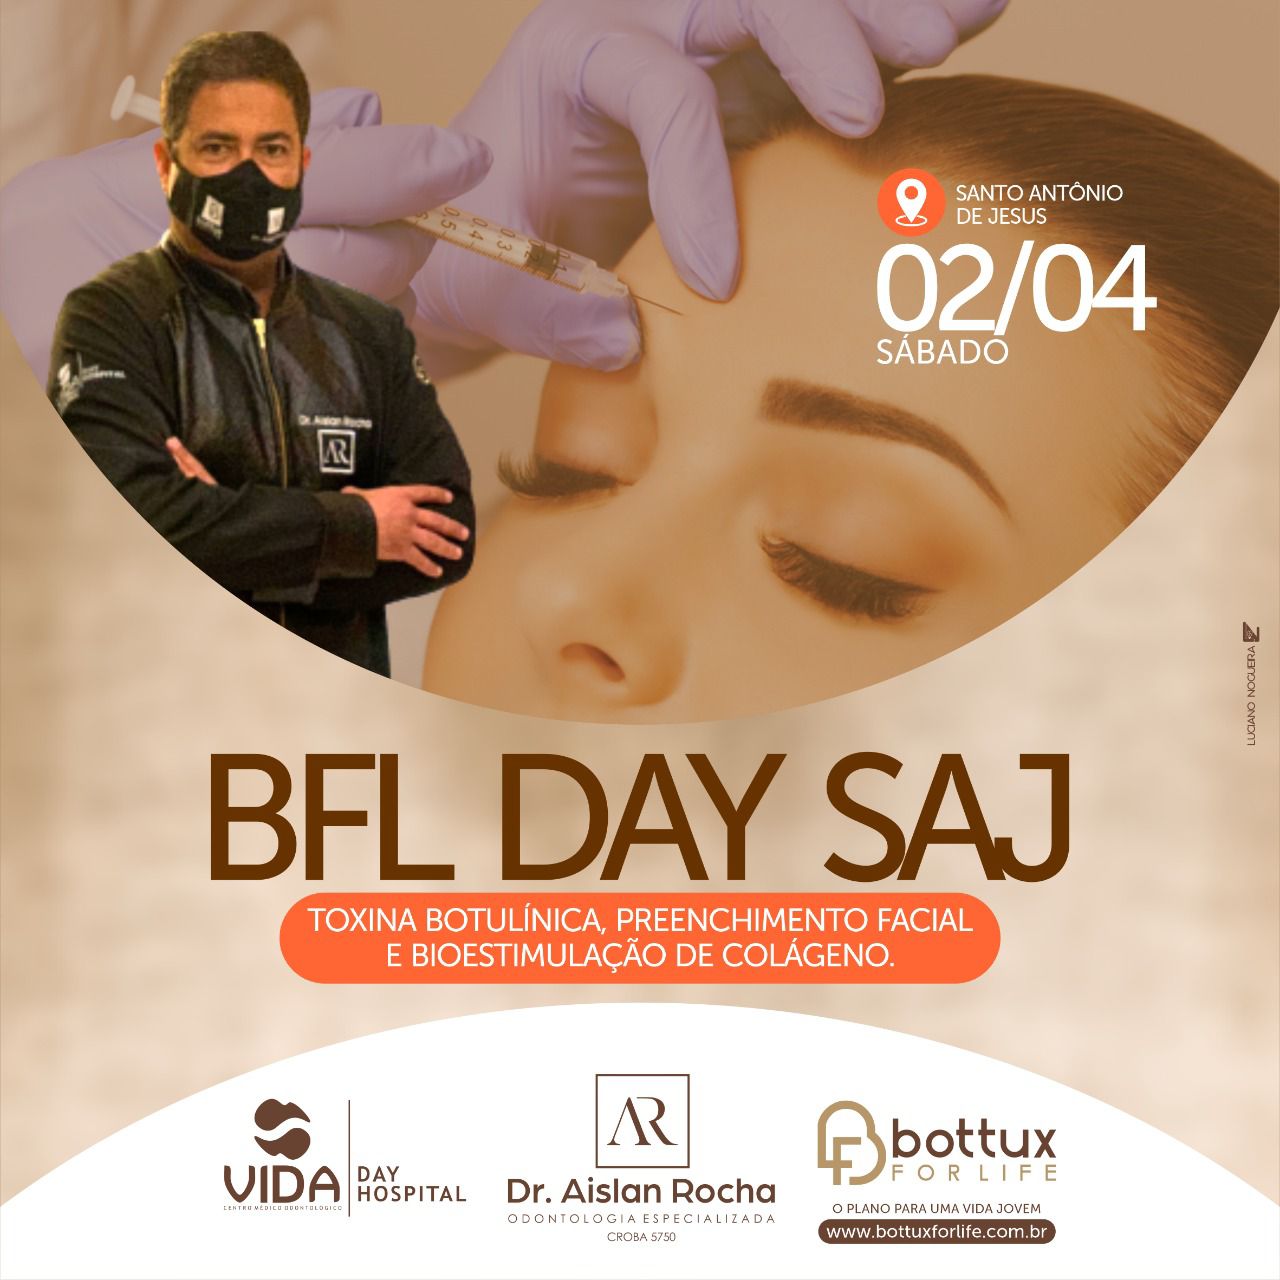 Neste sábado(02) será promovido um BFL DAY SAJ para cuidados da beleza e auto estima